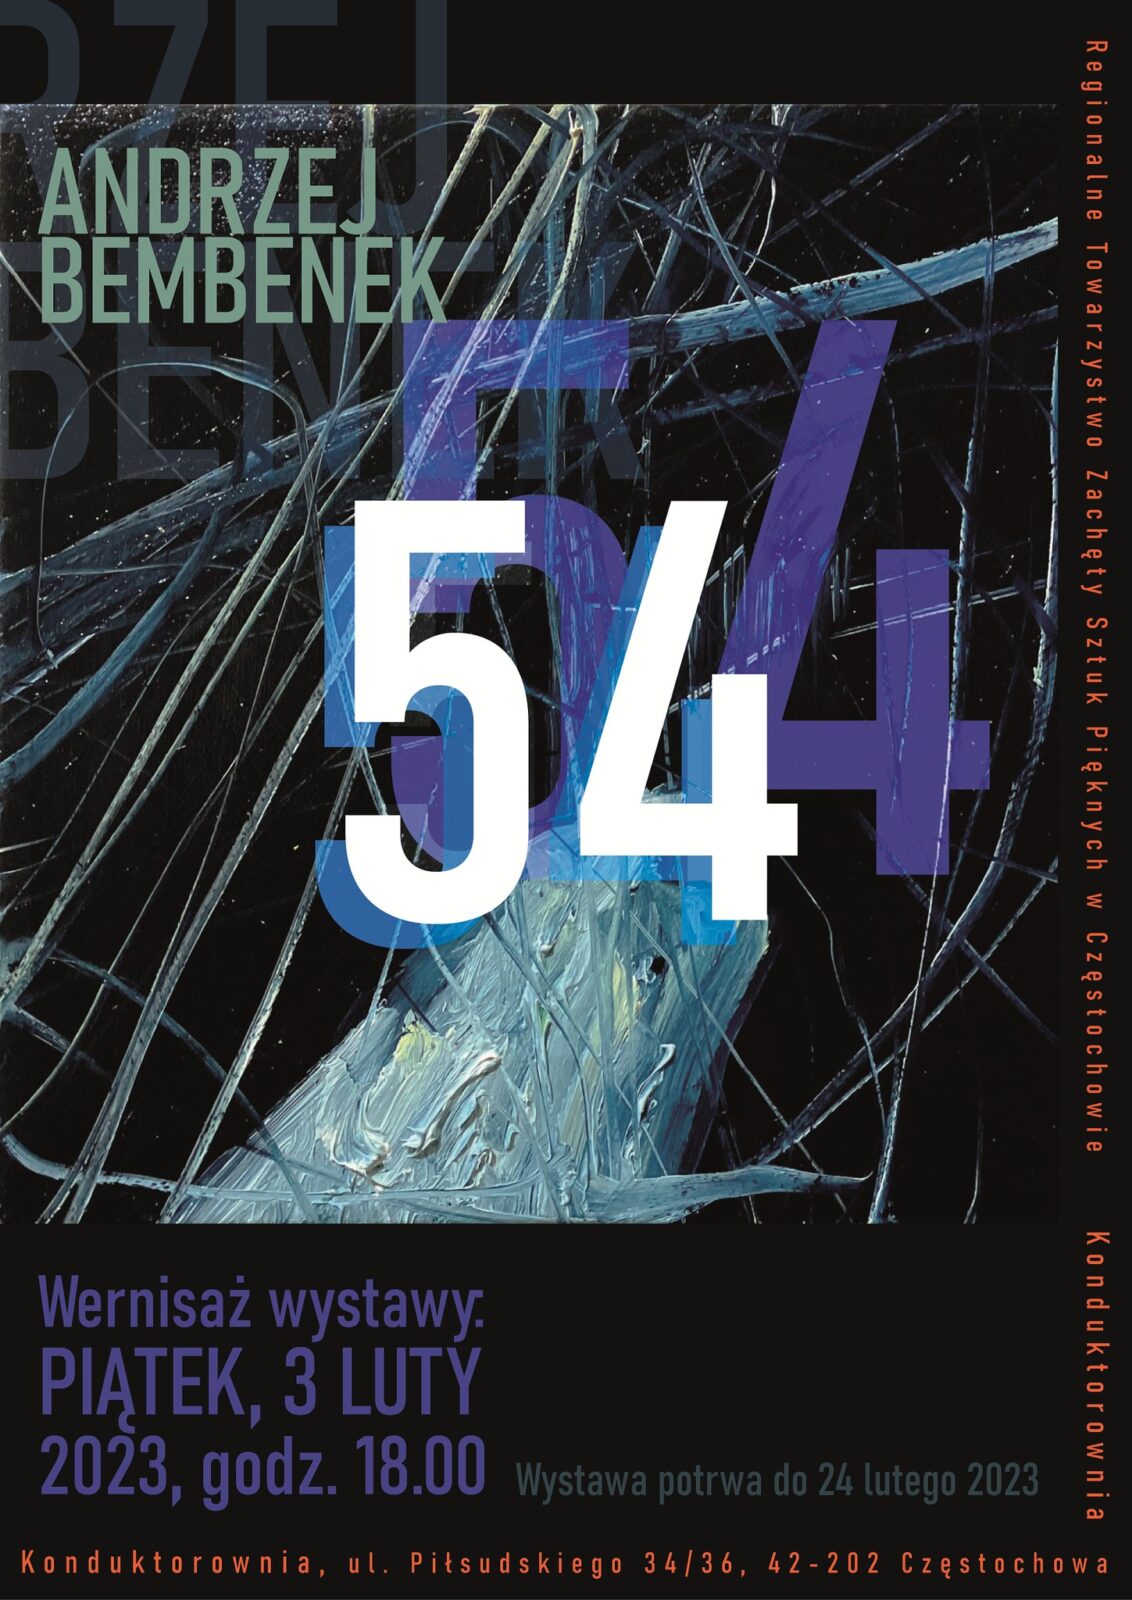 Nowa wystawa w częstochowskiej Konduktorowni. To "54" Andrzeja Bembenka 3